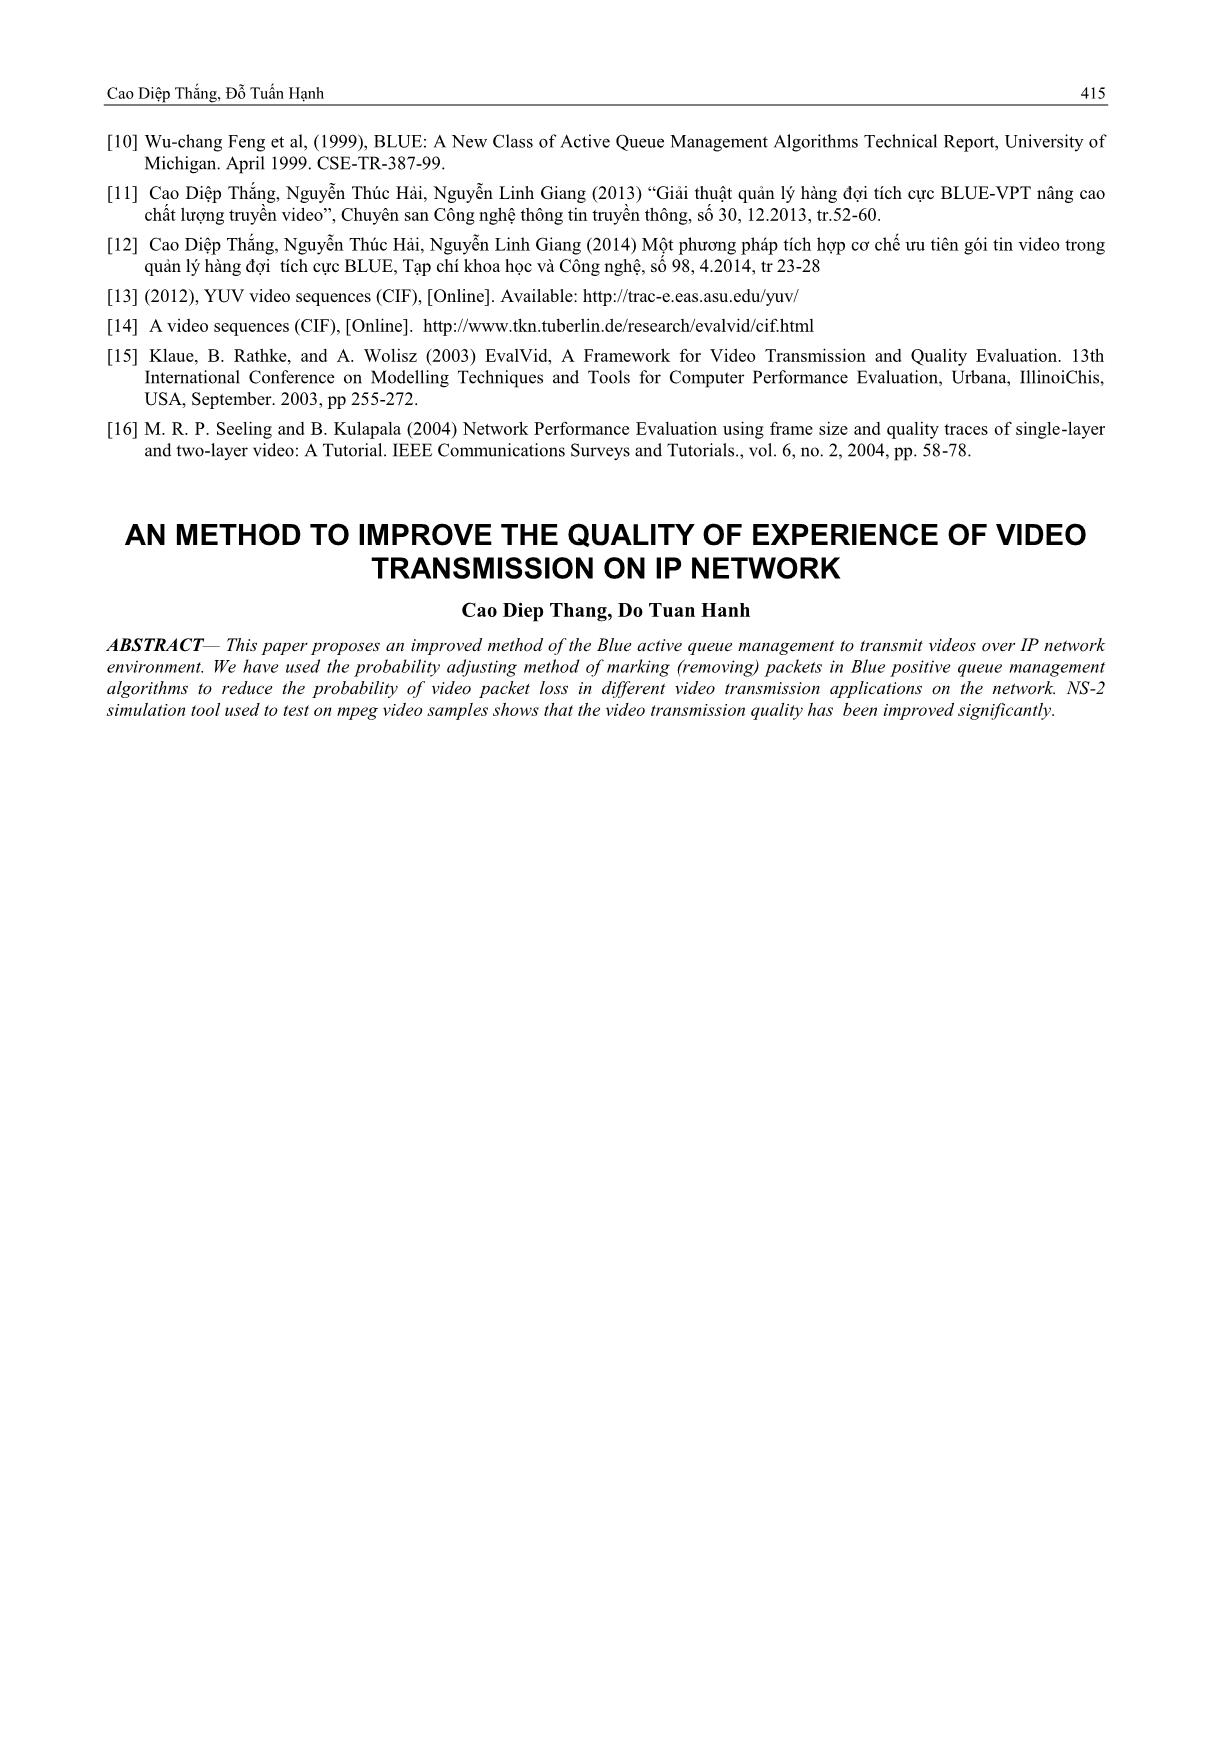 Một phương pháp cải thiện chất lượng trải nghiệm trong truyền video trên mạng IP trang 10